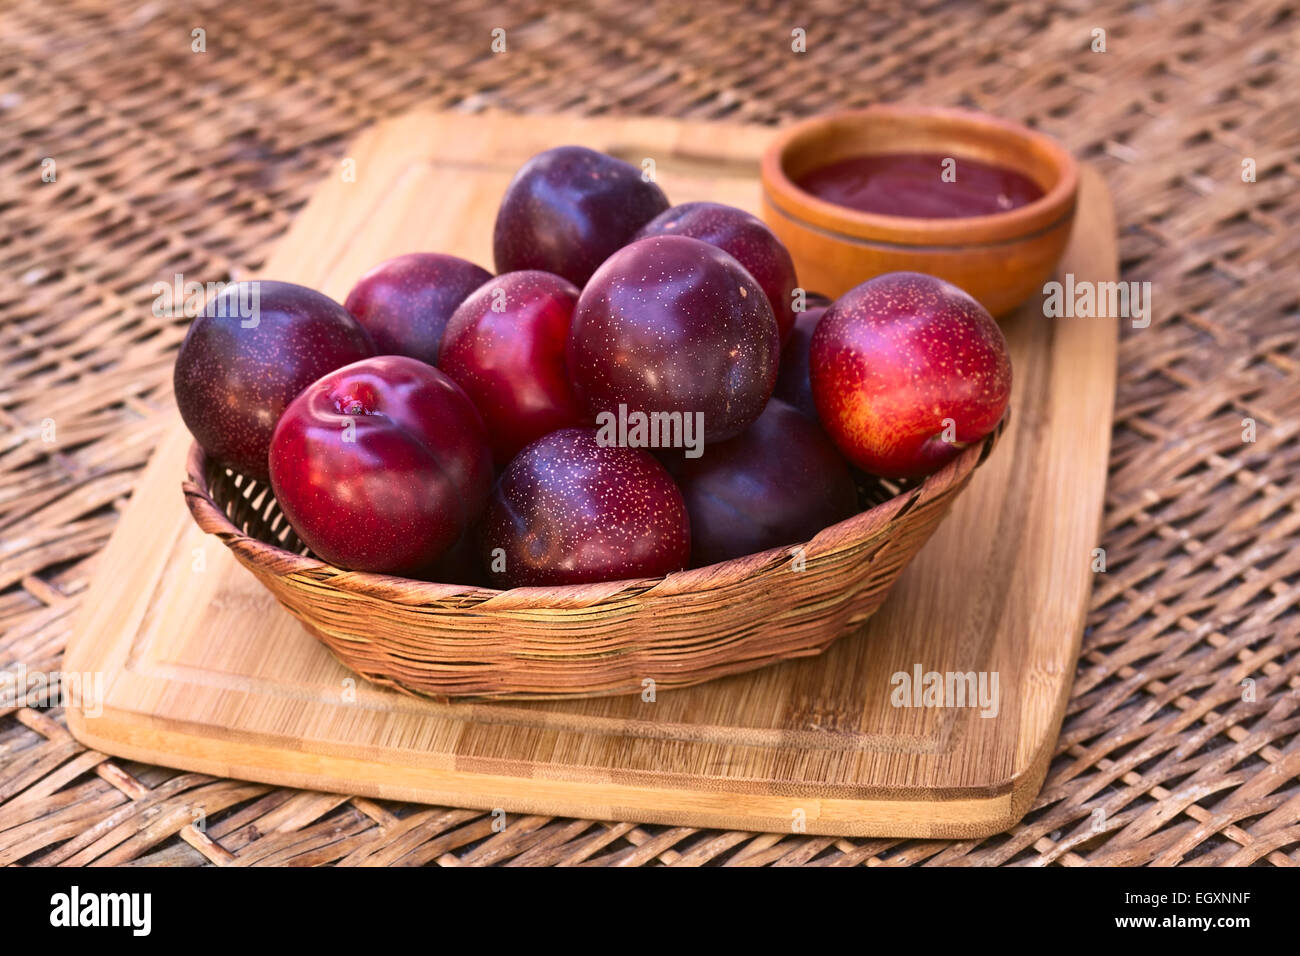 Panier tressé rempli de prune satsuma avec un petit bol de confiture de prunes à l'arrière sur planche de bois photographié avec lumière naturelle Banque D'Images